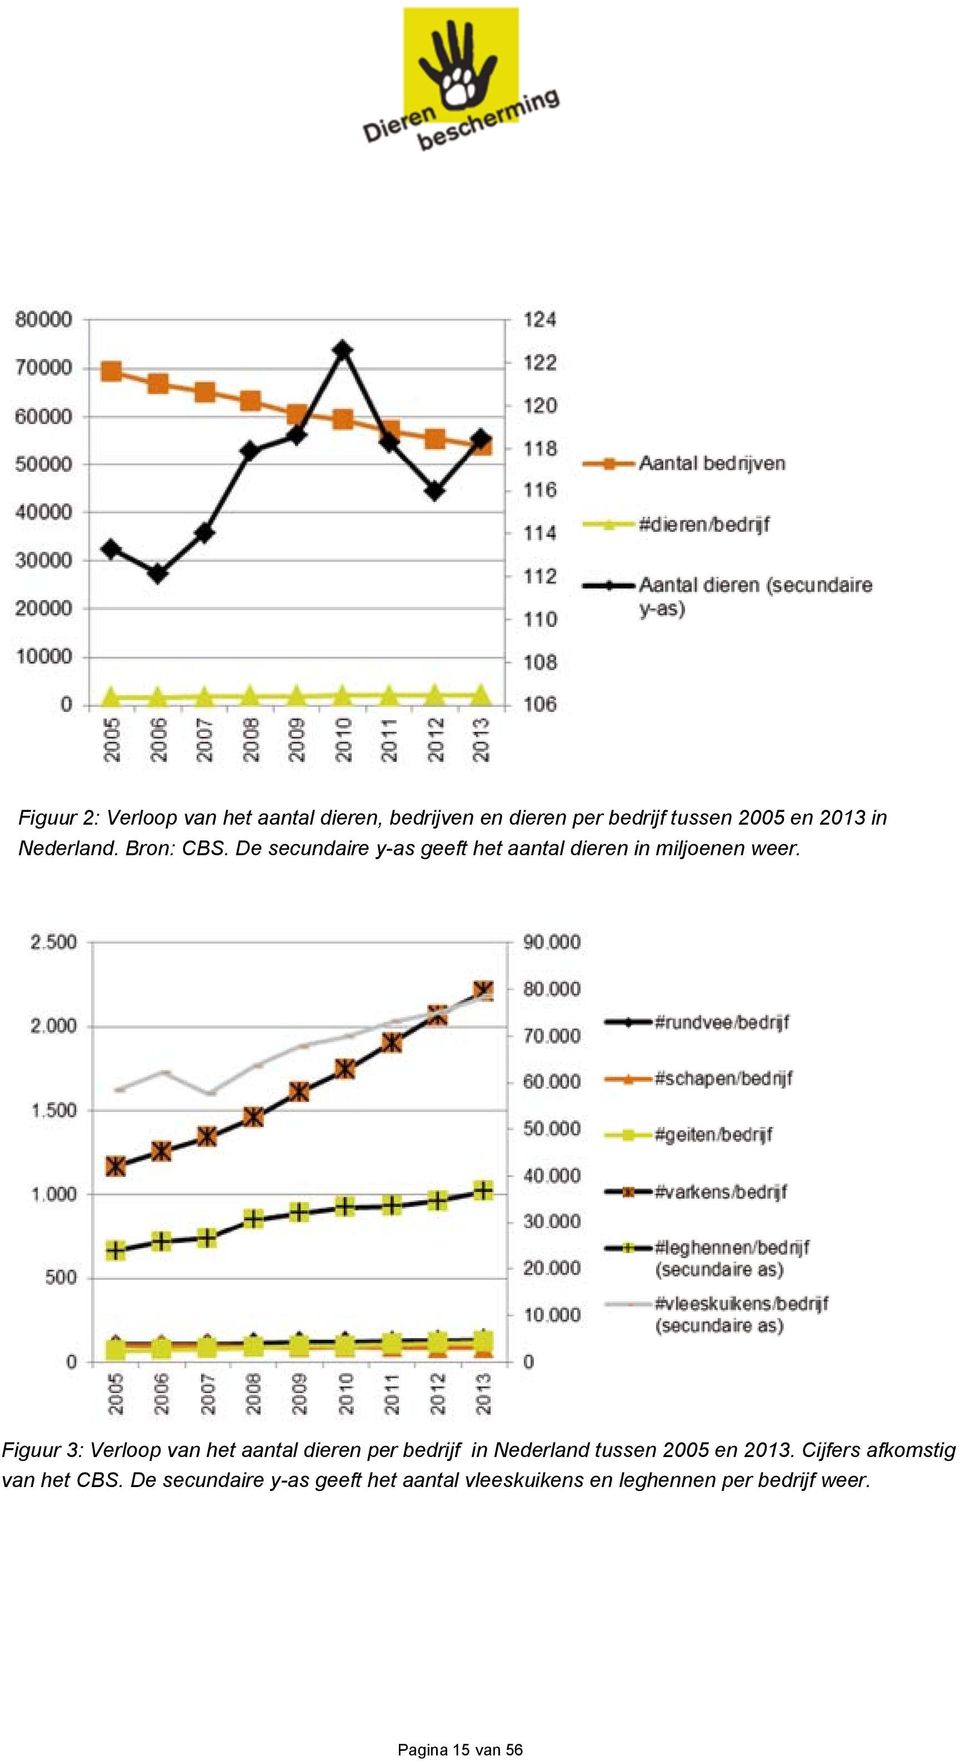 Figuur 3: Verloop van het aantal dieren per bedrijf in Nederland tussen 2005 en 2013.